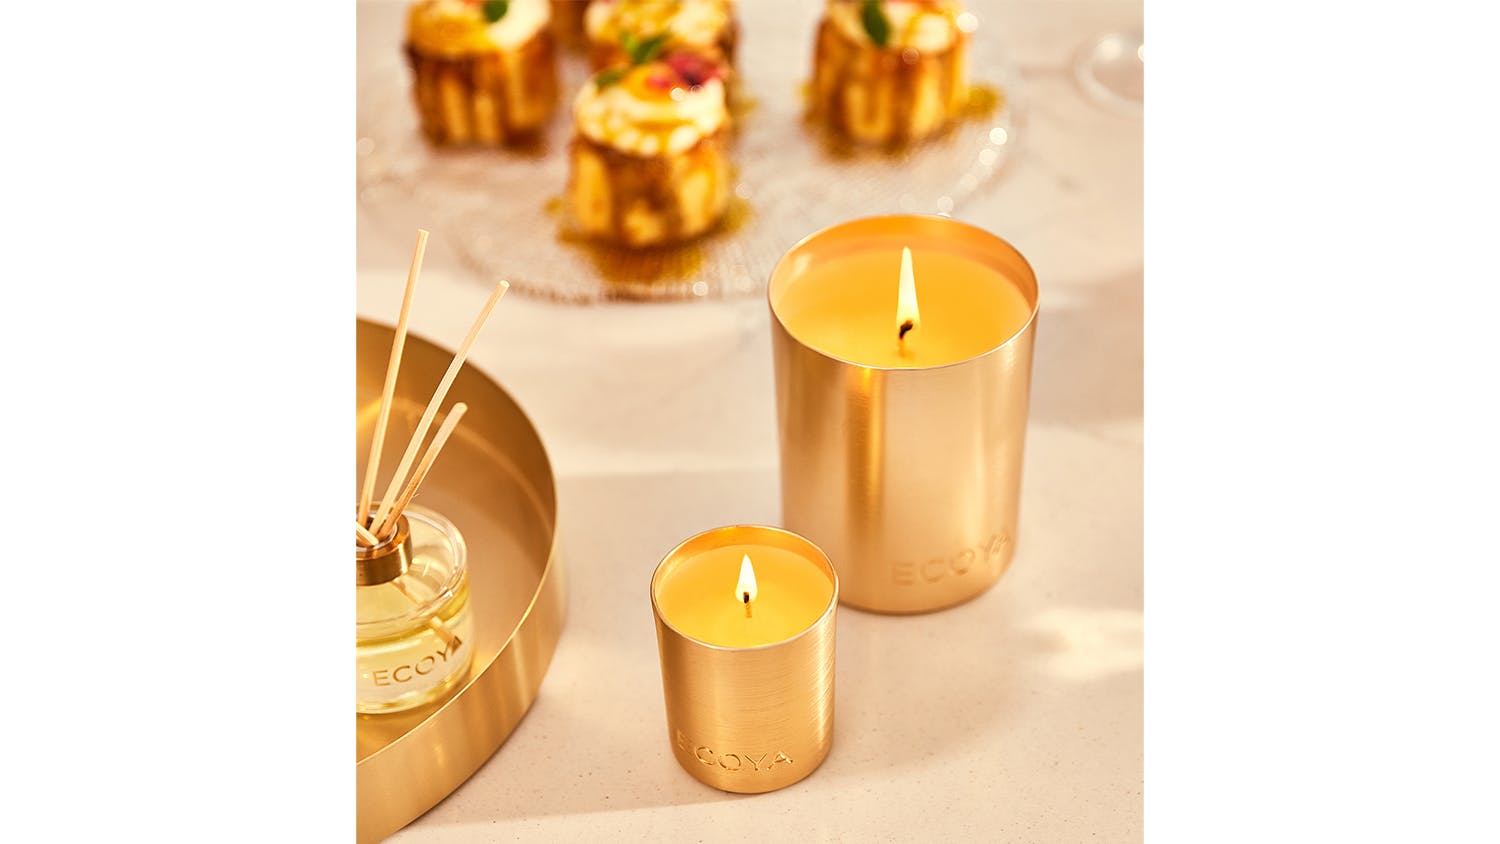 Ecoya 105g Mini Goldie Candle - Fresh Pine